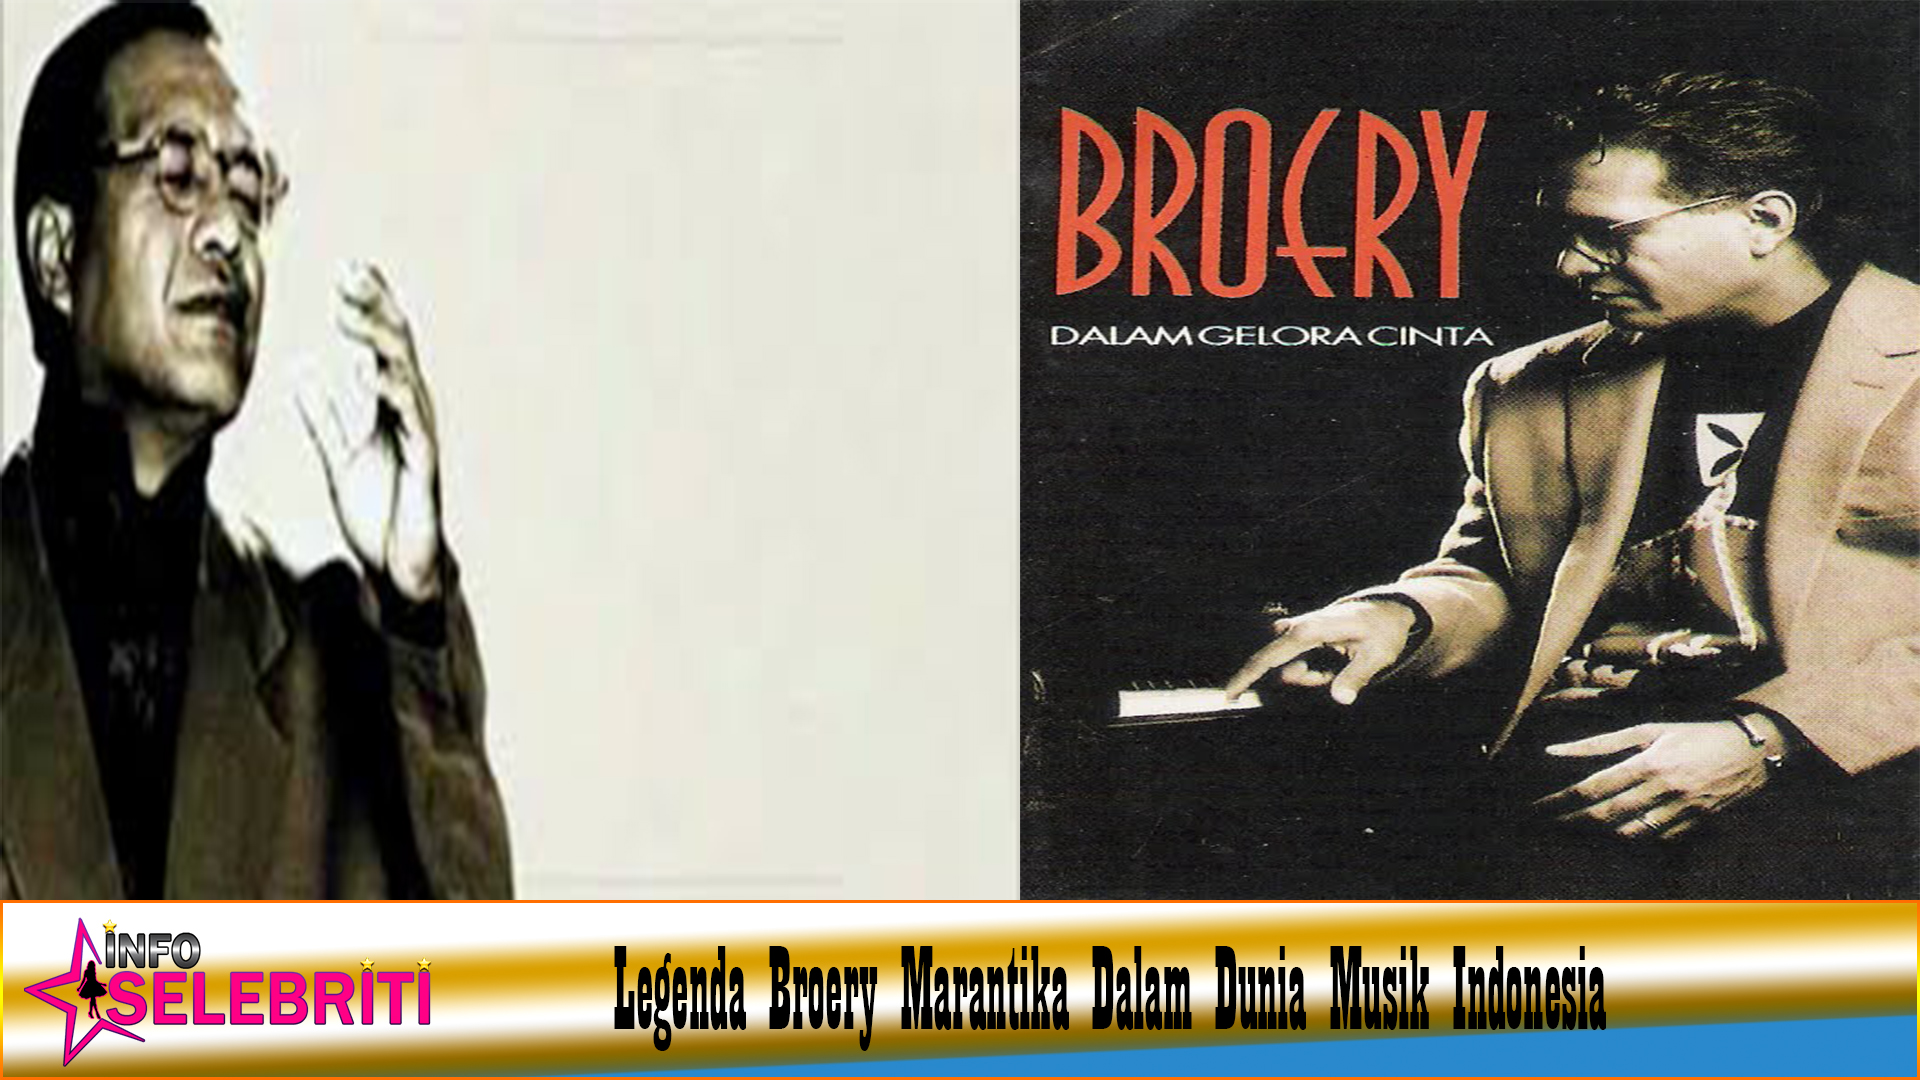 Legenda Broery Marantika Dalam Dunia Musik Indonesia